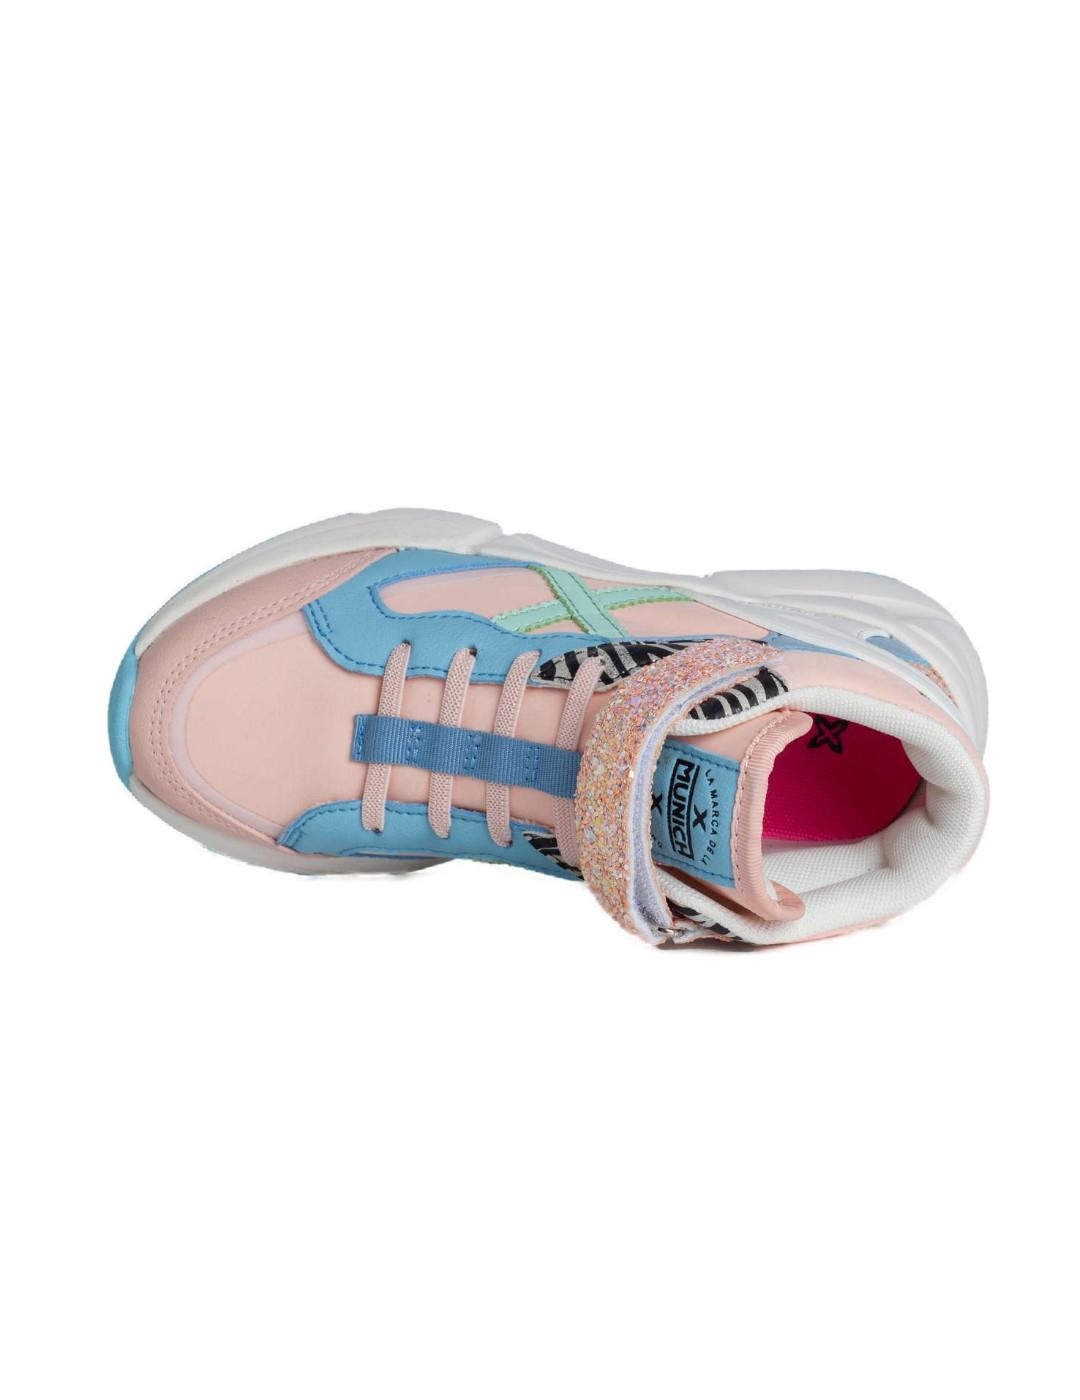 Zapatillas Munich Mini Track boot rosa/azul/blanco de niña